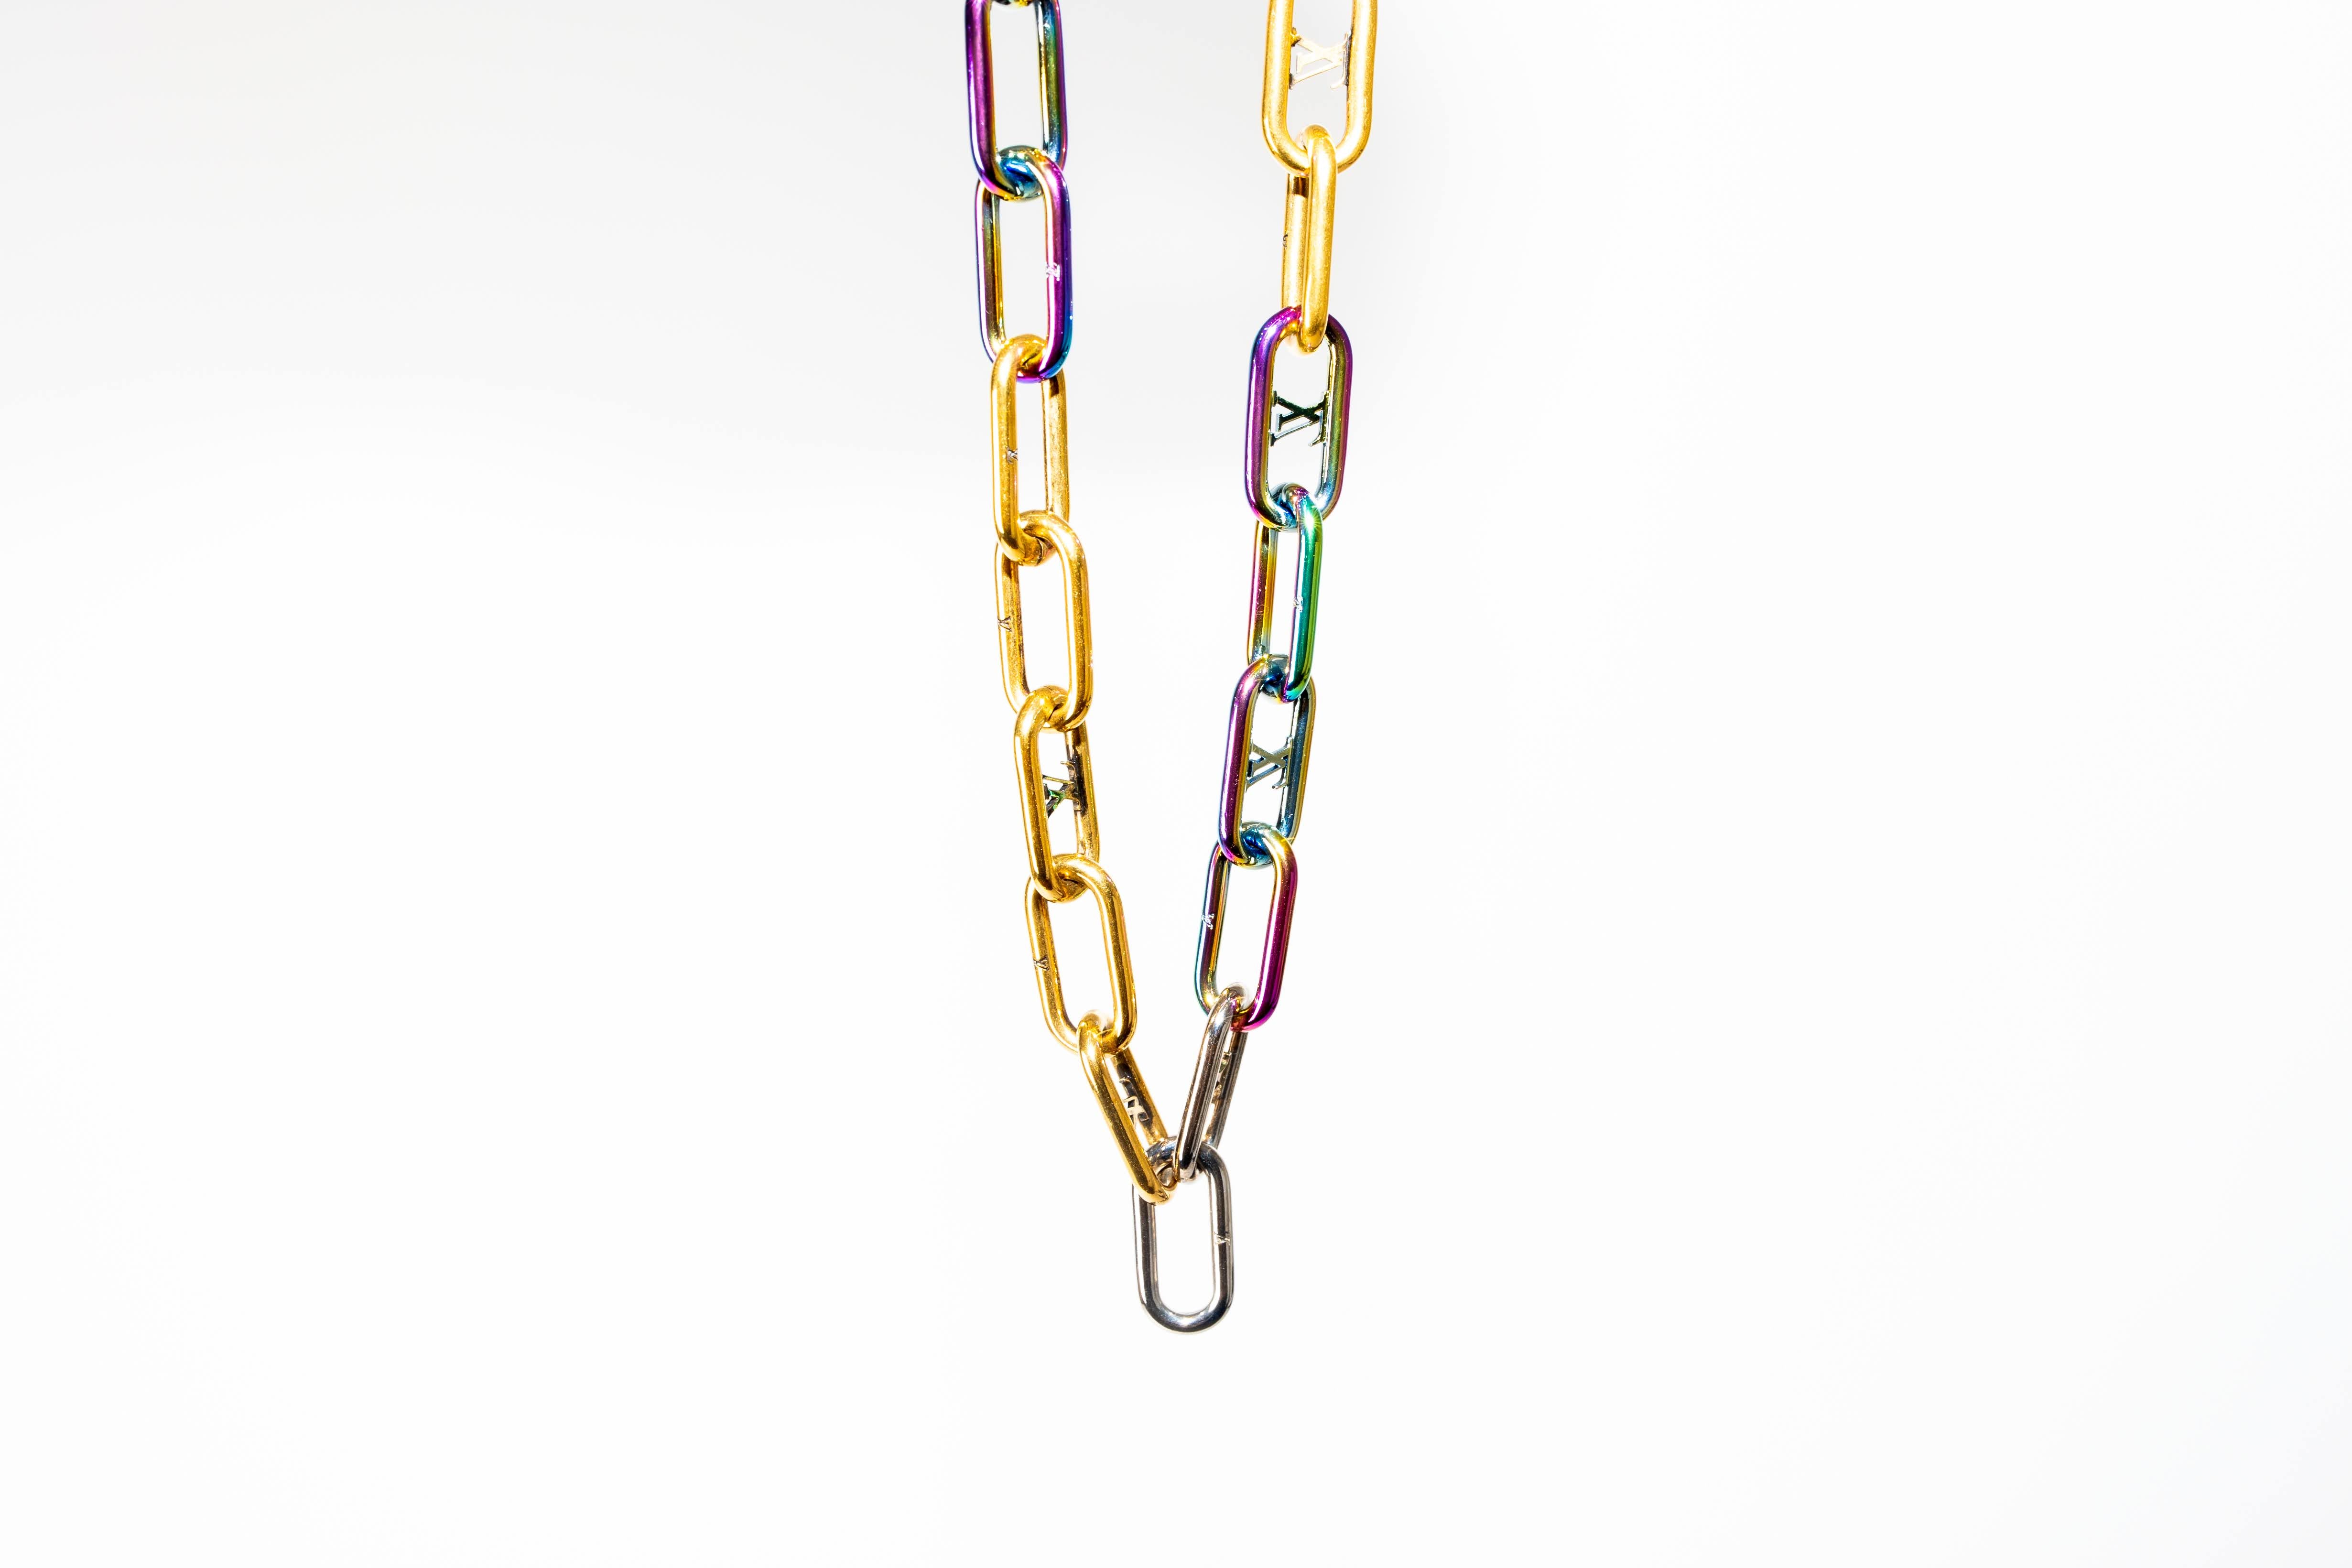 Louis Vuitton Virgil Abloh Signature Chain Necklace – My Next Fit